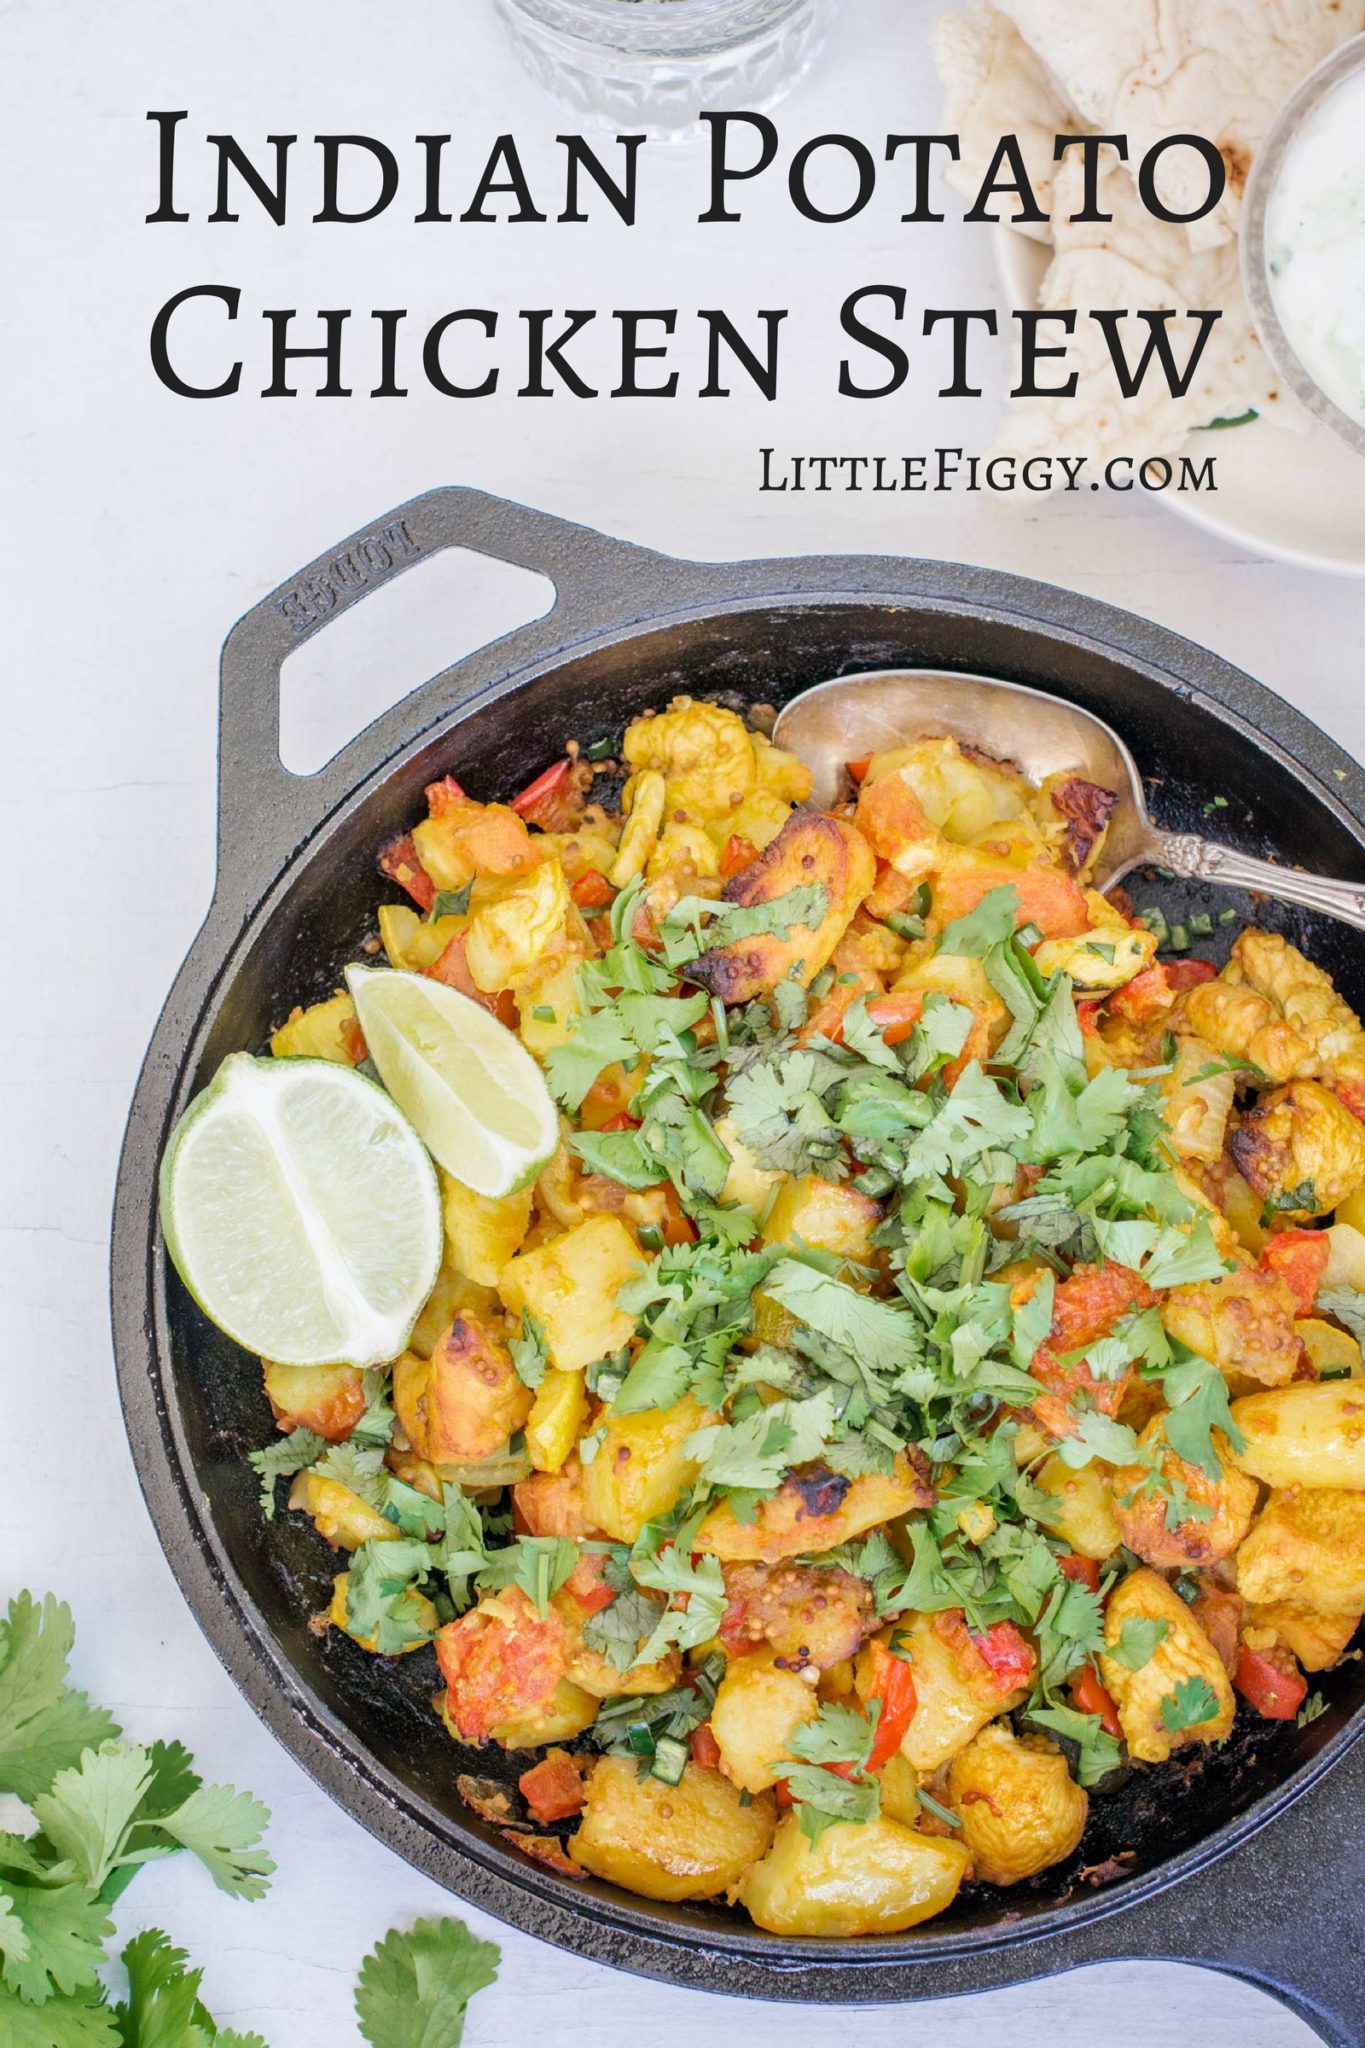 Indian Potato Chicken Stew Recipe